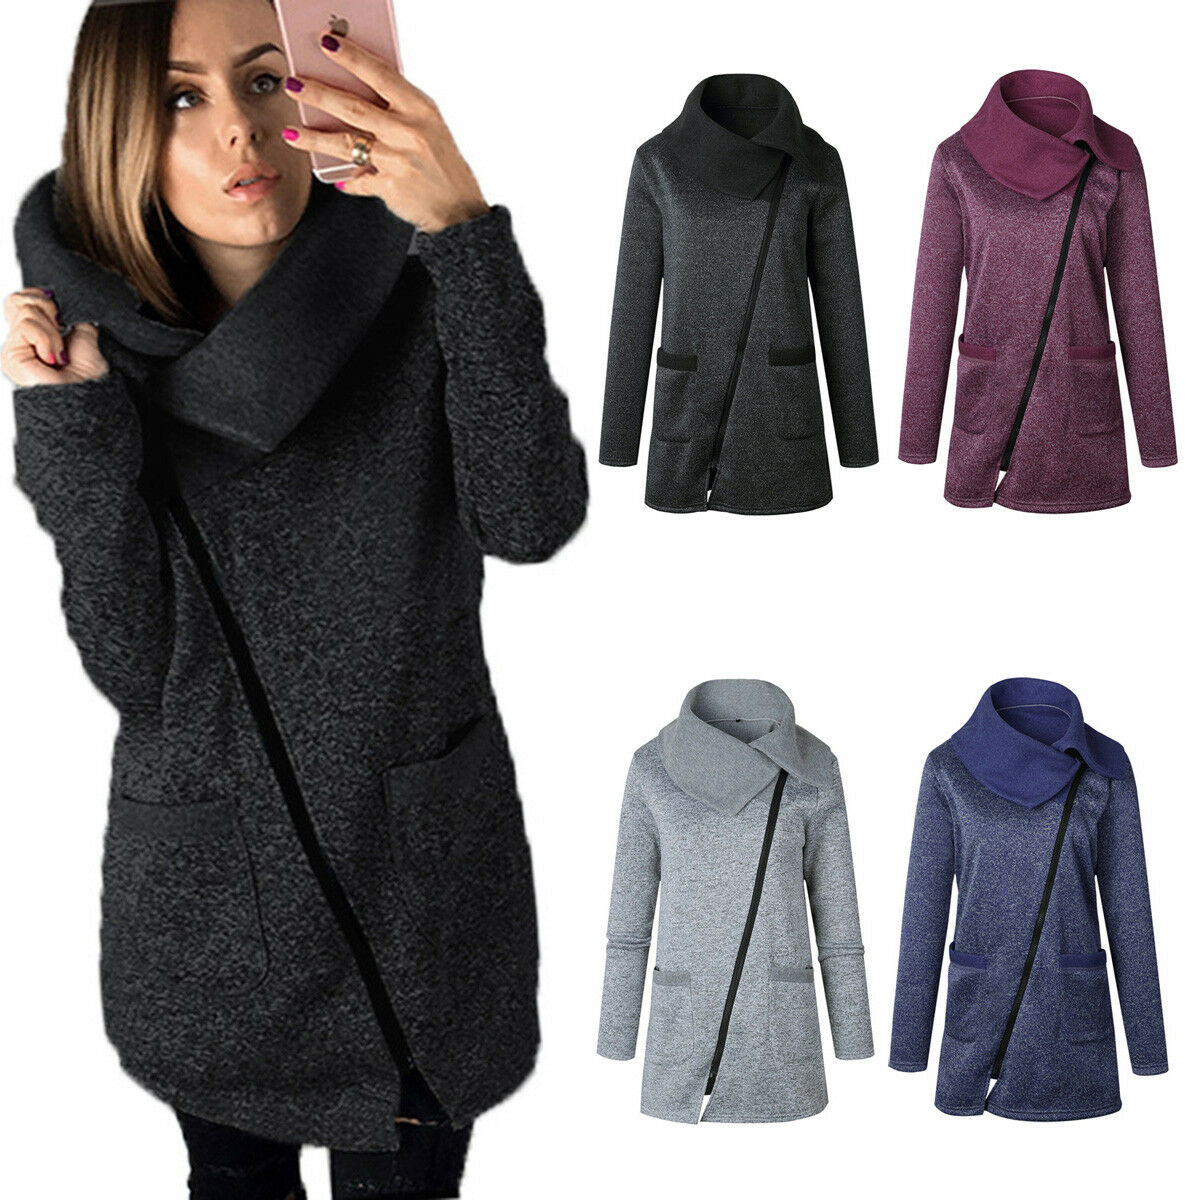 Fashion Women Winter Trench Coat Warm Parka Overcoat Long Jacket Zipper Outwear